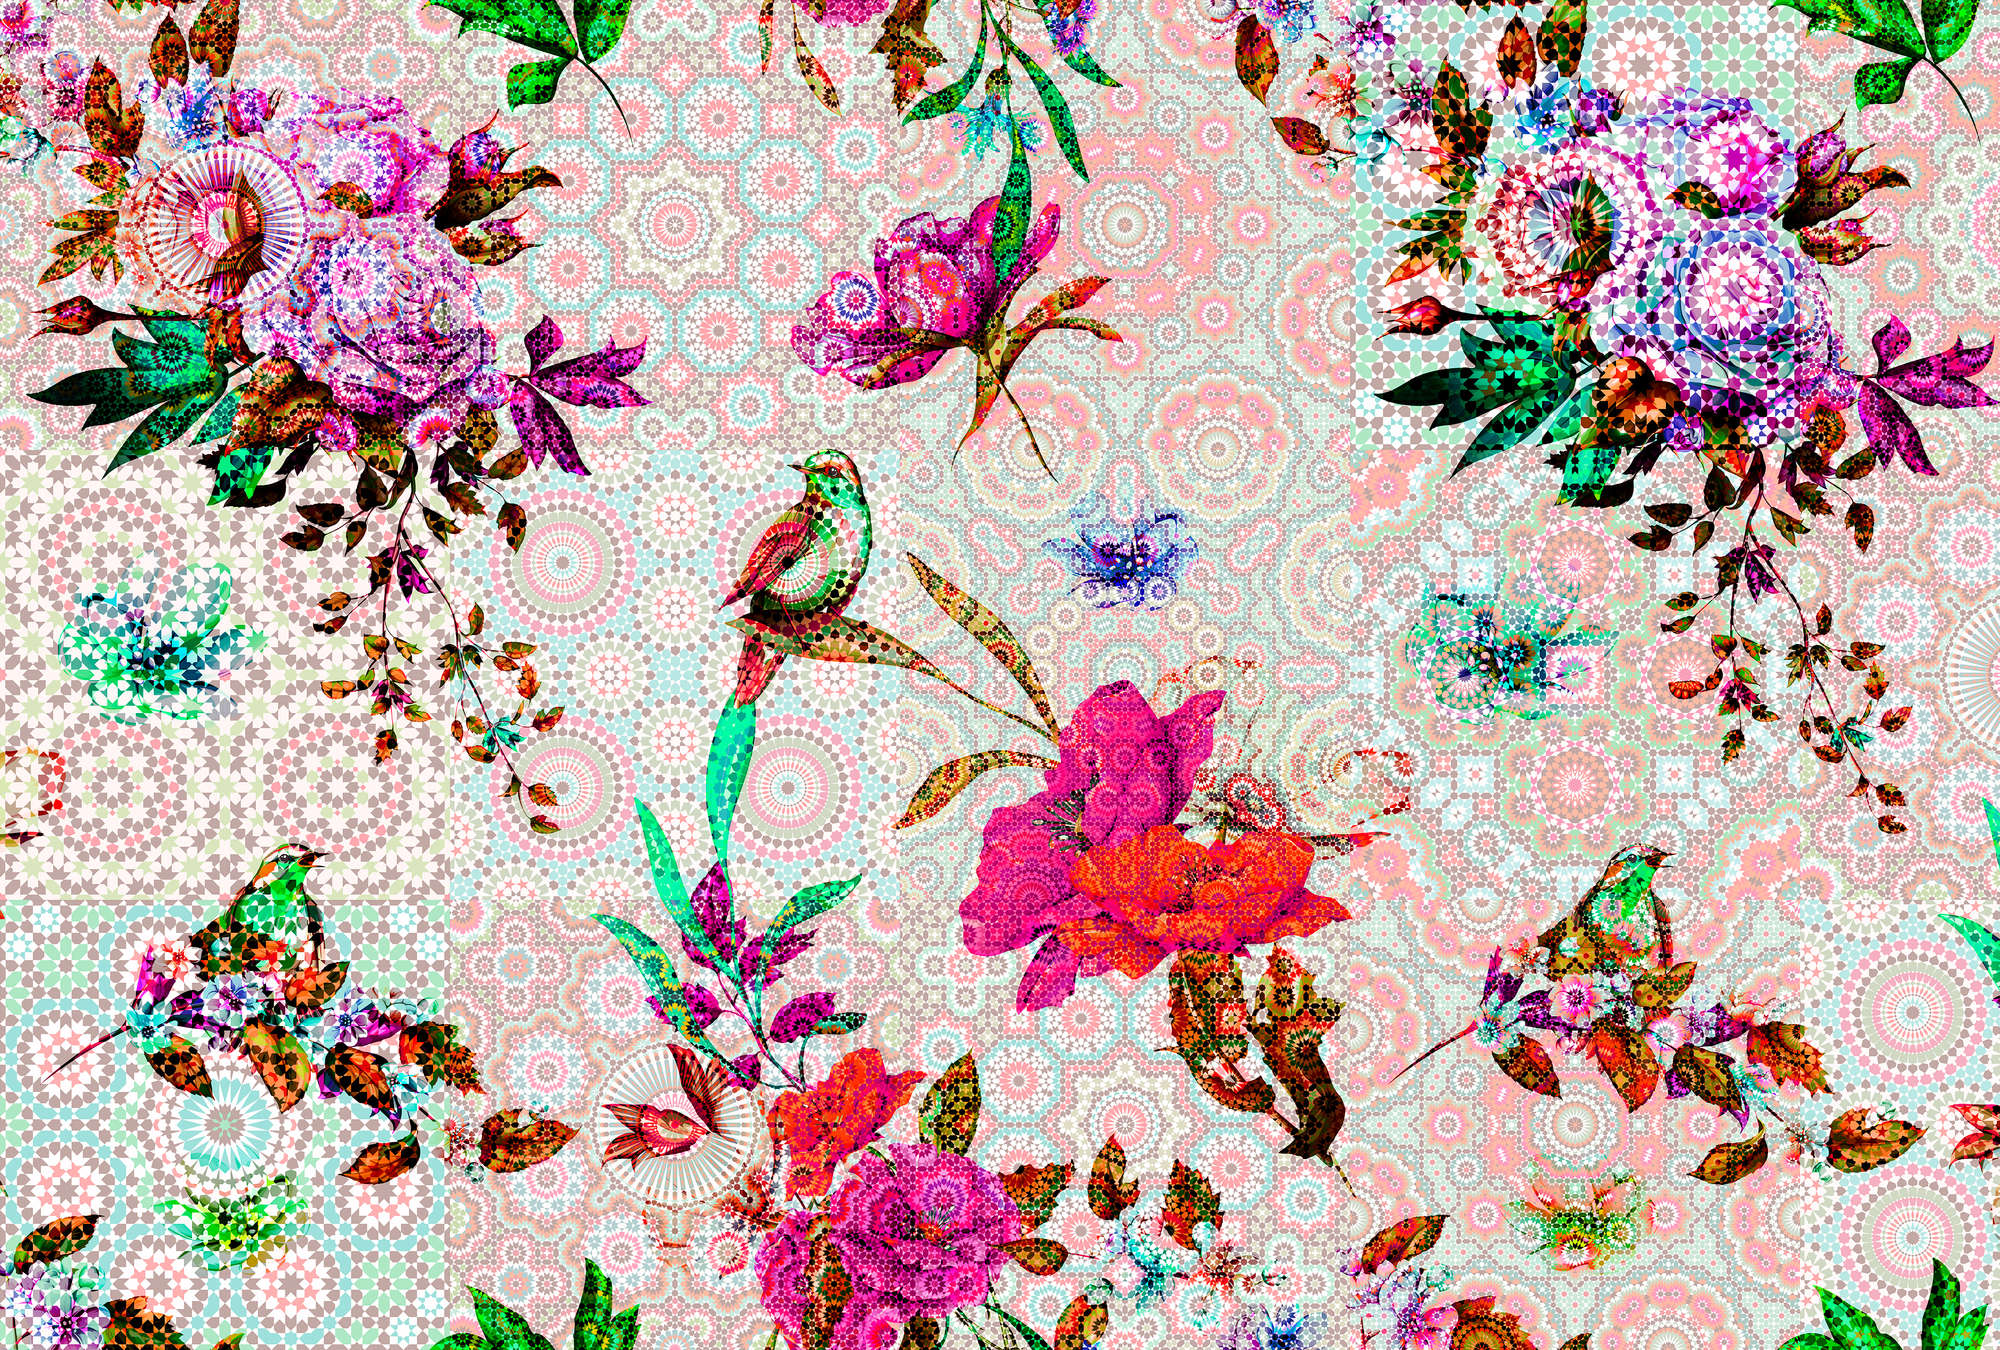             Papier peint design mosaïque florale - Walls by Patel
        